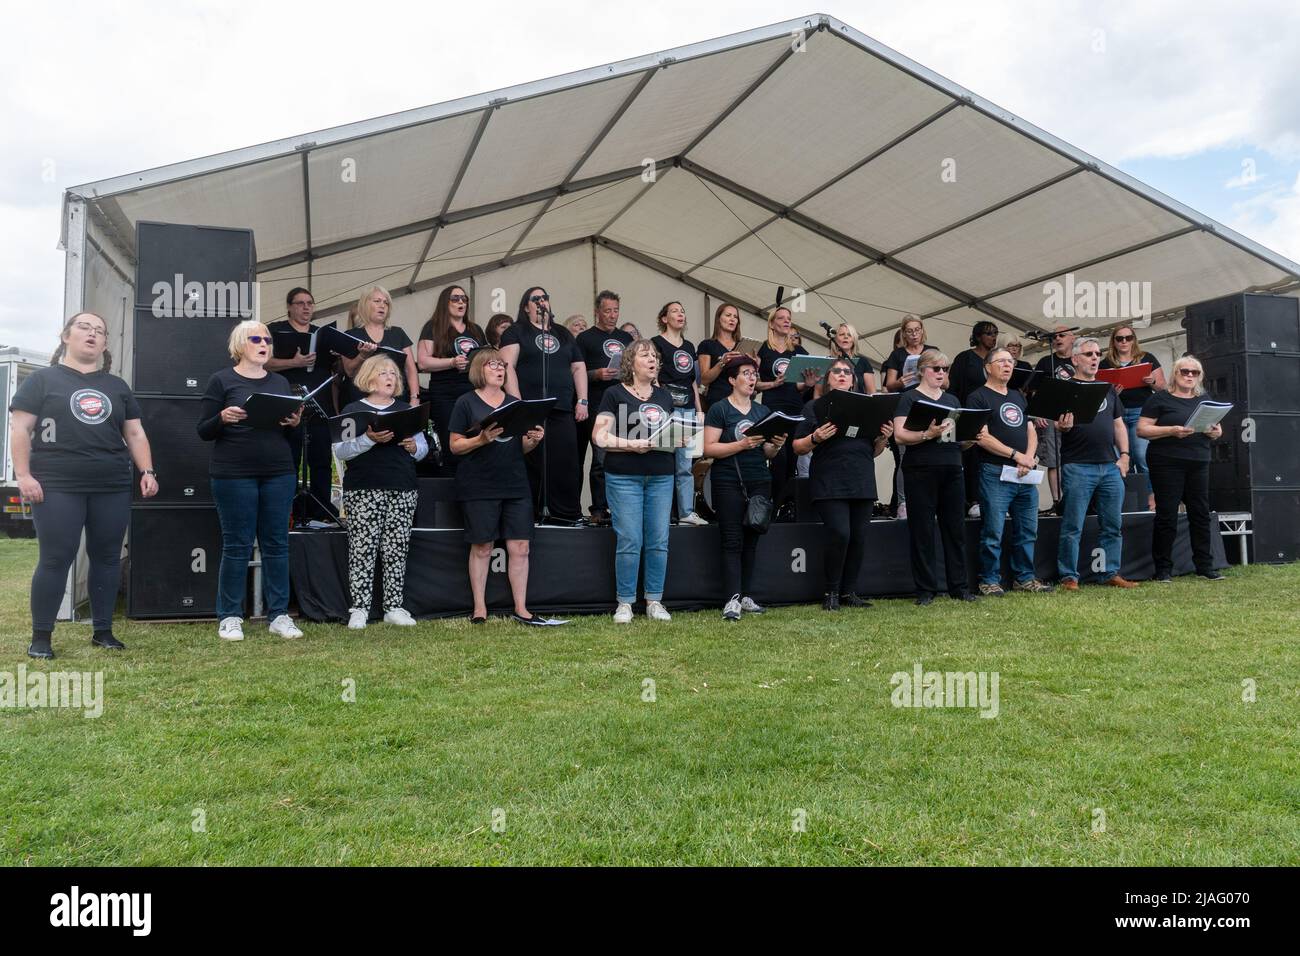 VoxChoir, eine soziale Gesangsgruppe, tritt auf der Bühne bei einem Outdoor-Event in Farnborough, Hampshire, England, Großbritannien, auf Stockfoto